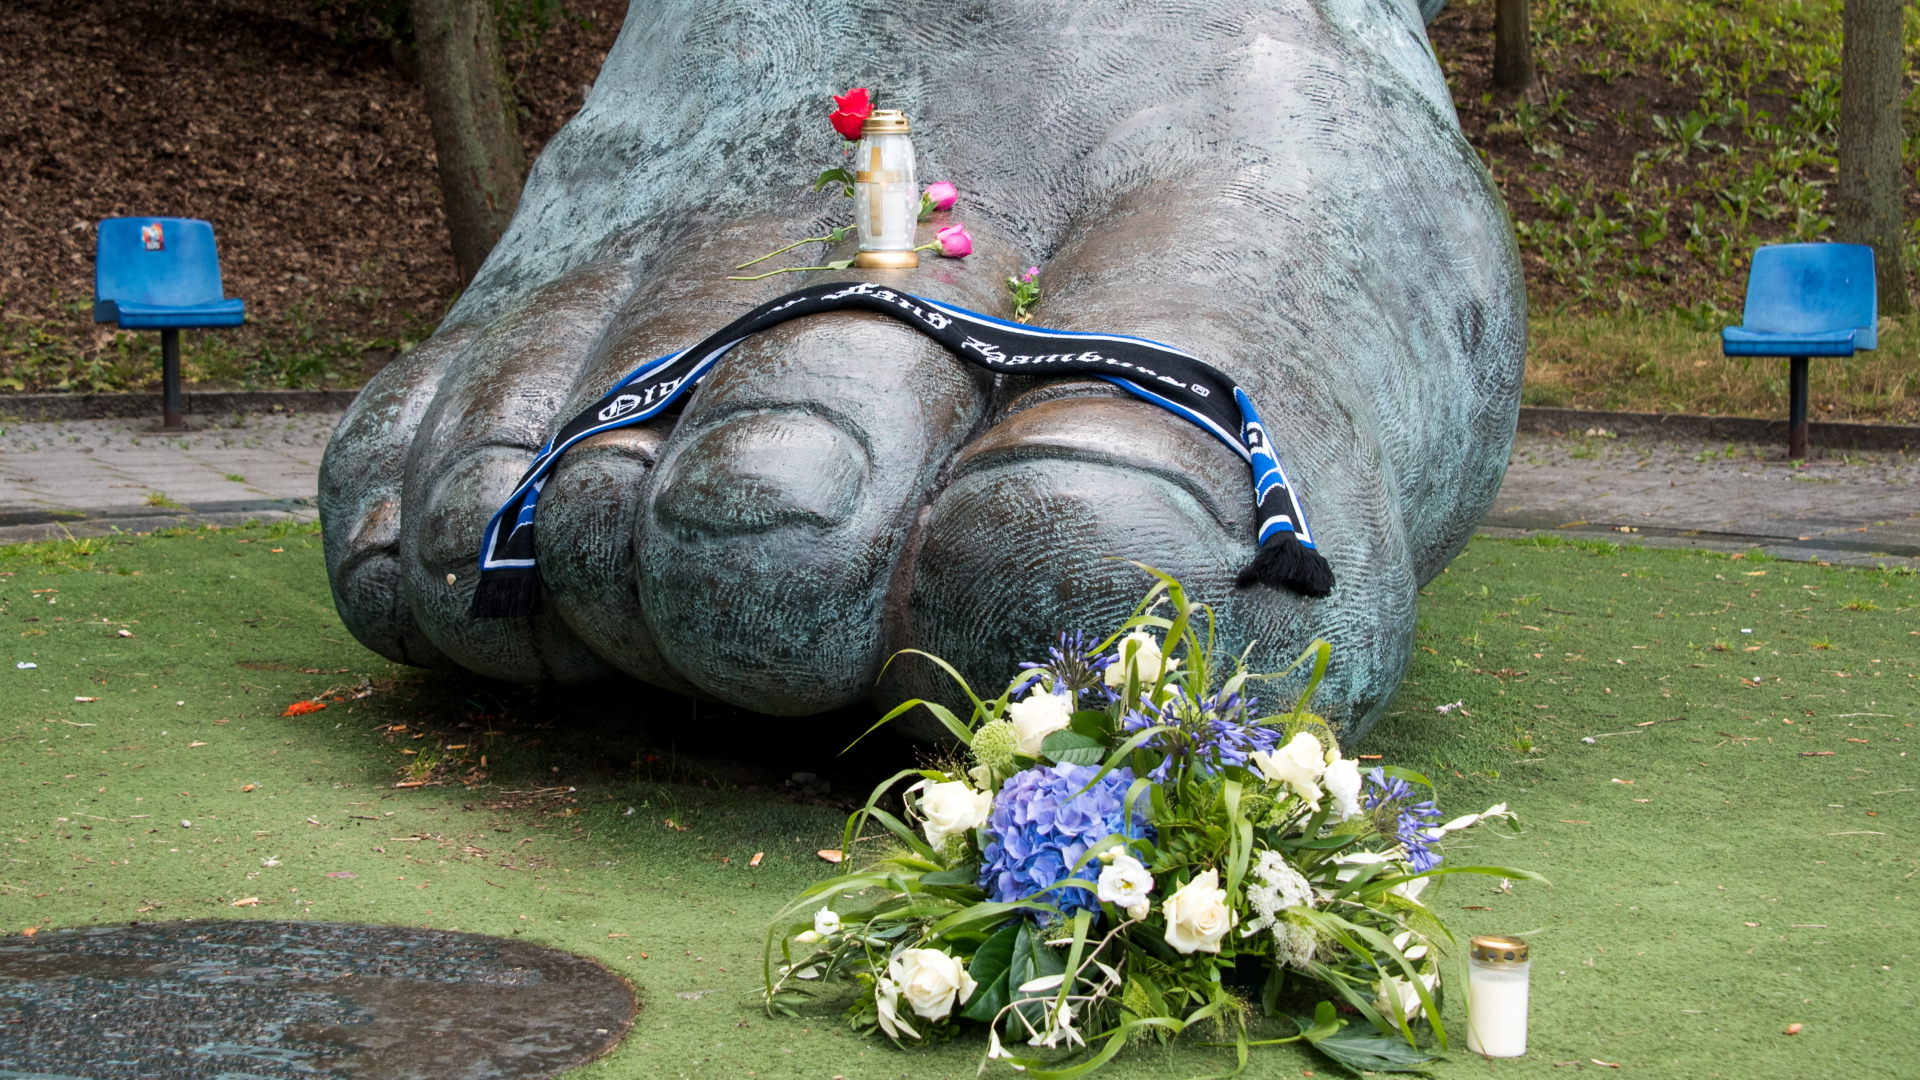 Auf einer Bronze vor dem Volksparkstadion, die den Fuß des ehemaligen Fußballspielers Uwe Seeler darstellen soll, stehen und liegen eine Kerze, Blumen und ein Schal. | dpa